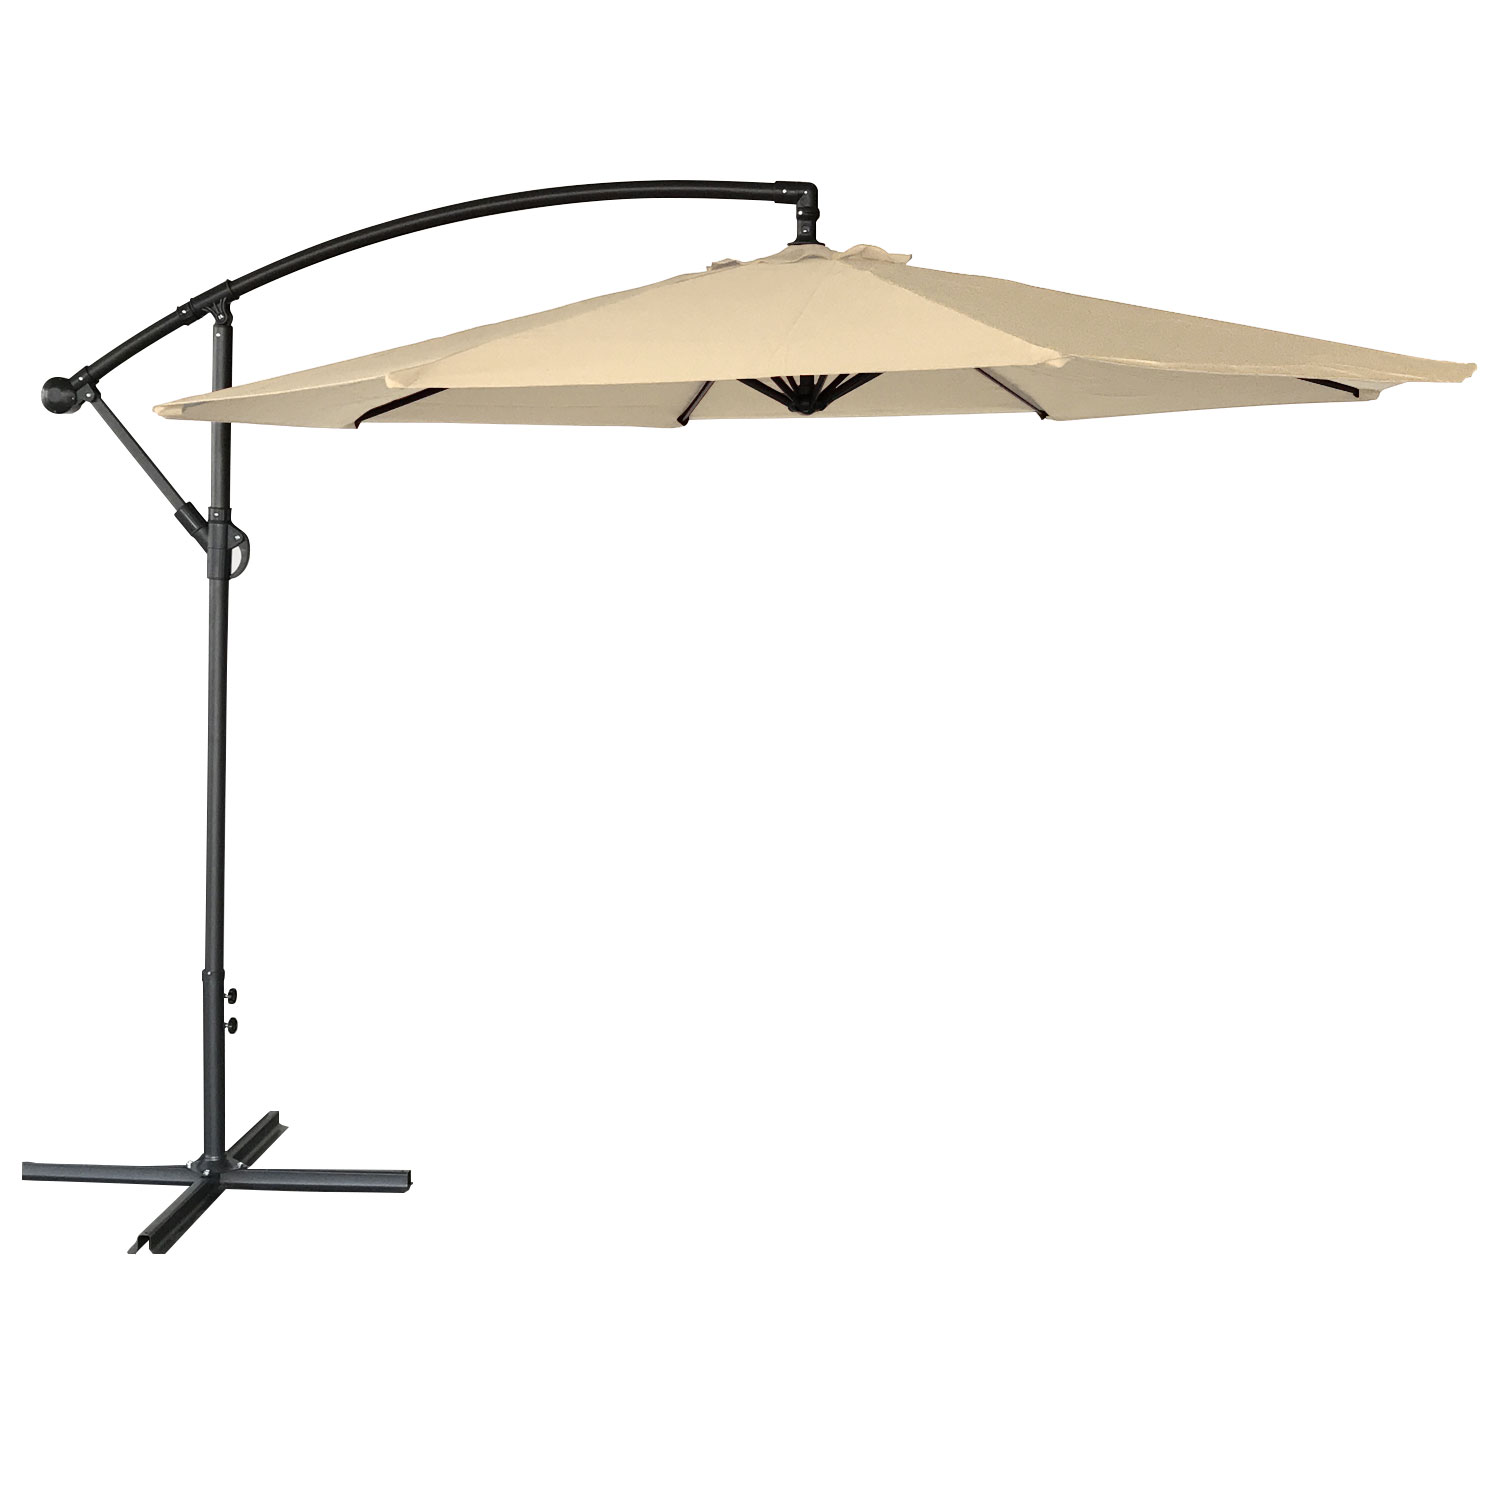 OAHU offset paraplu, rond, 3.50m diameter, beige